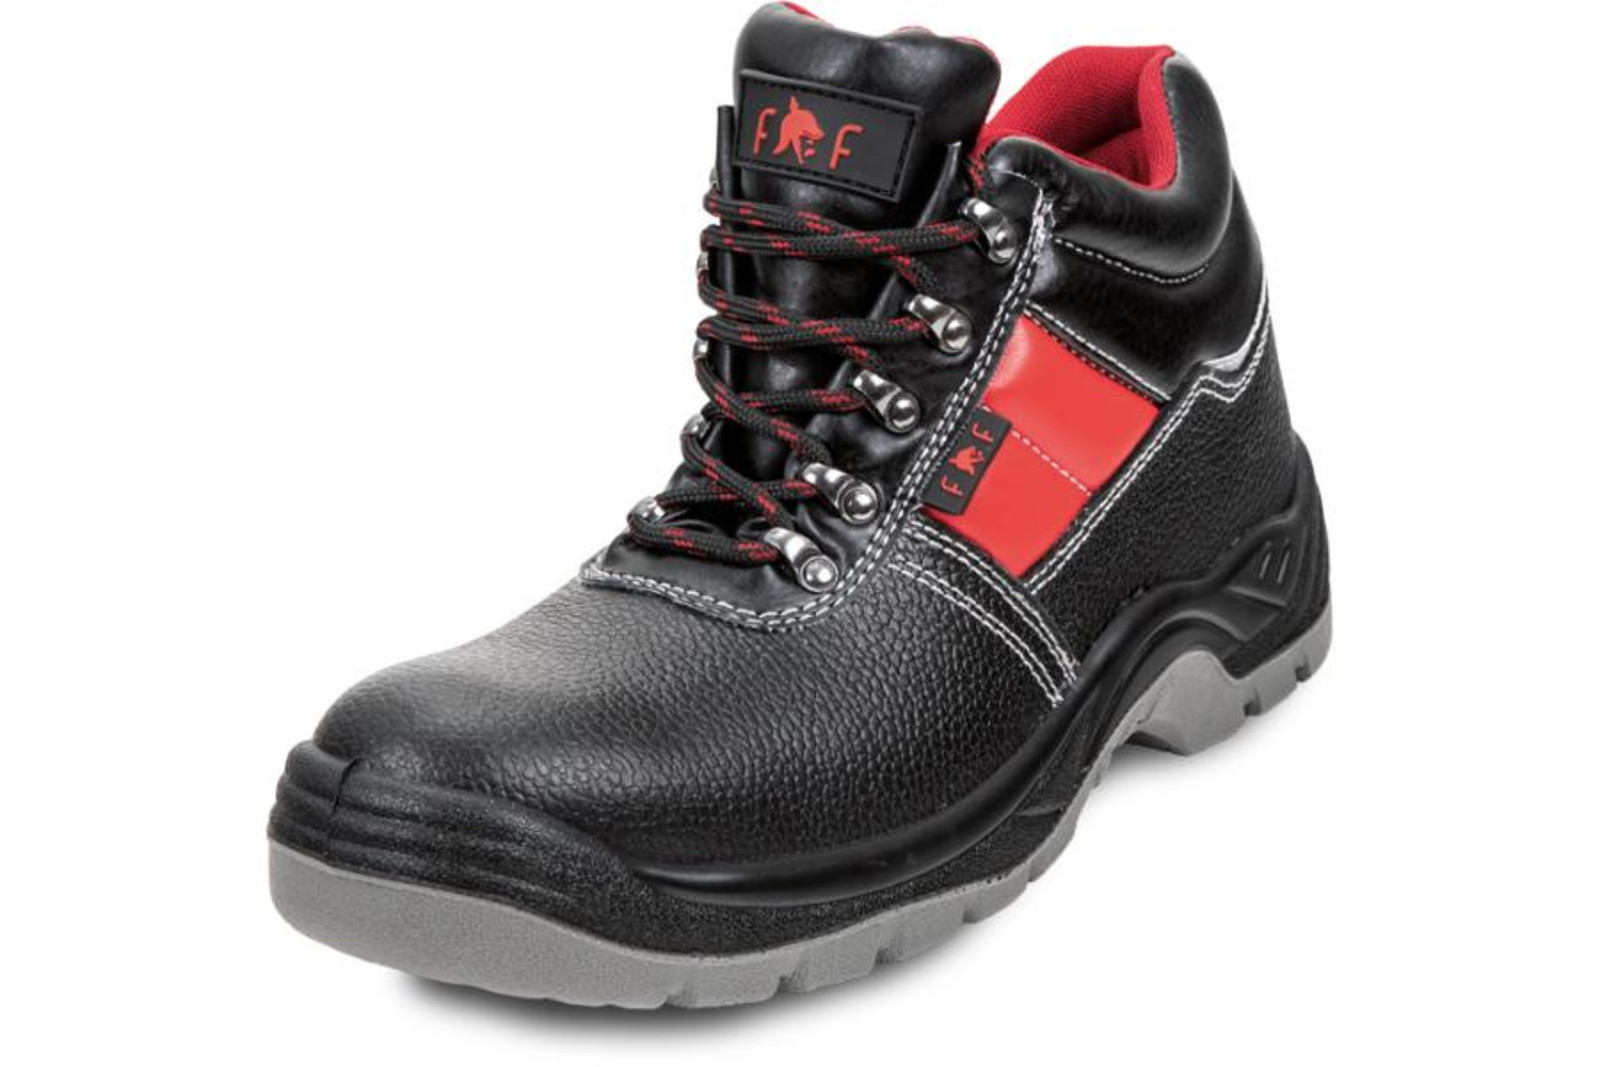 Bezpečnostná obuv SC 03-003 S3 - veľkosť: 42, farba: čierna